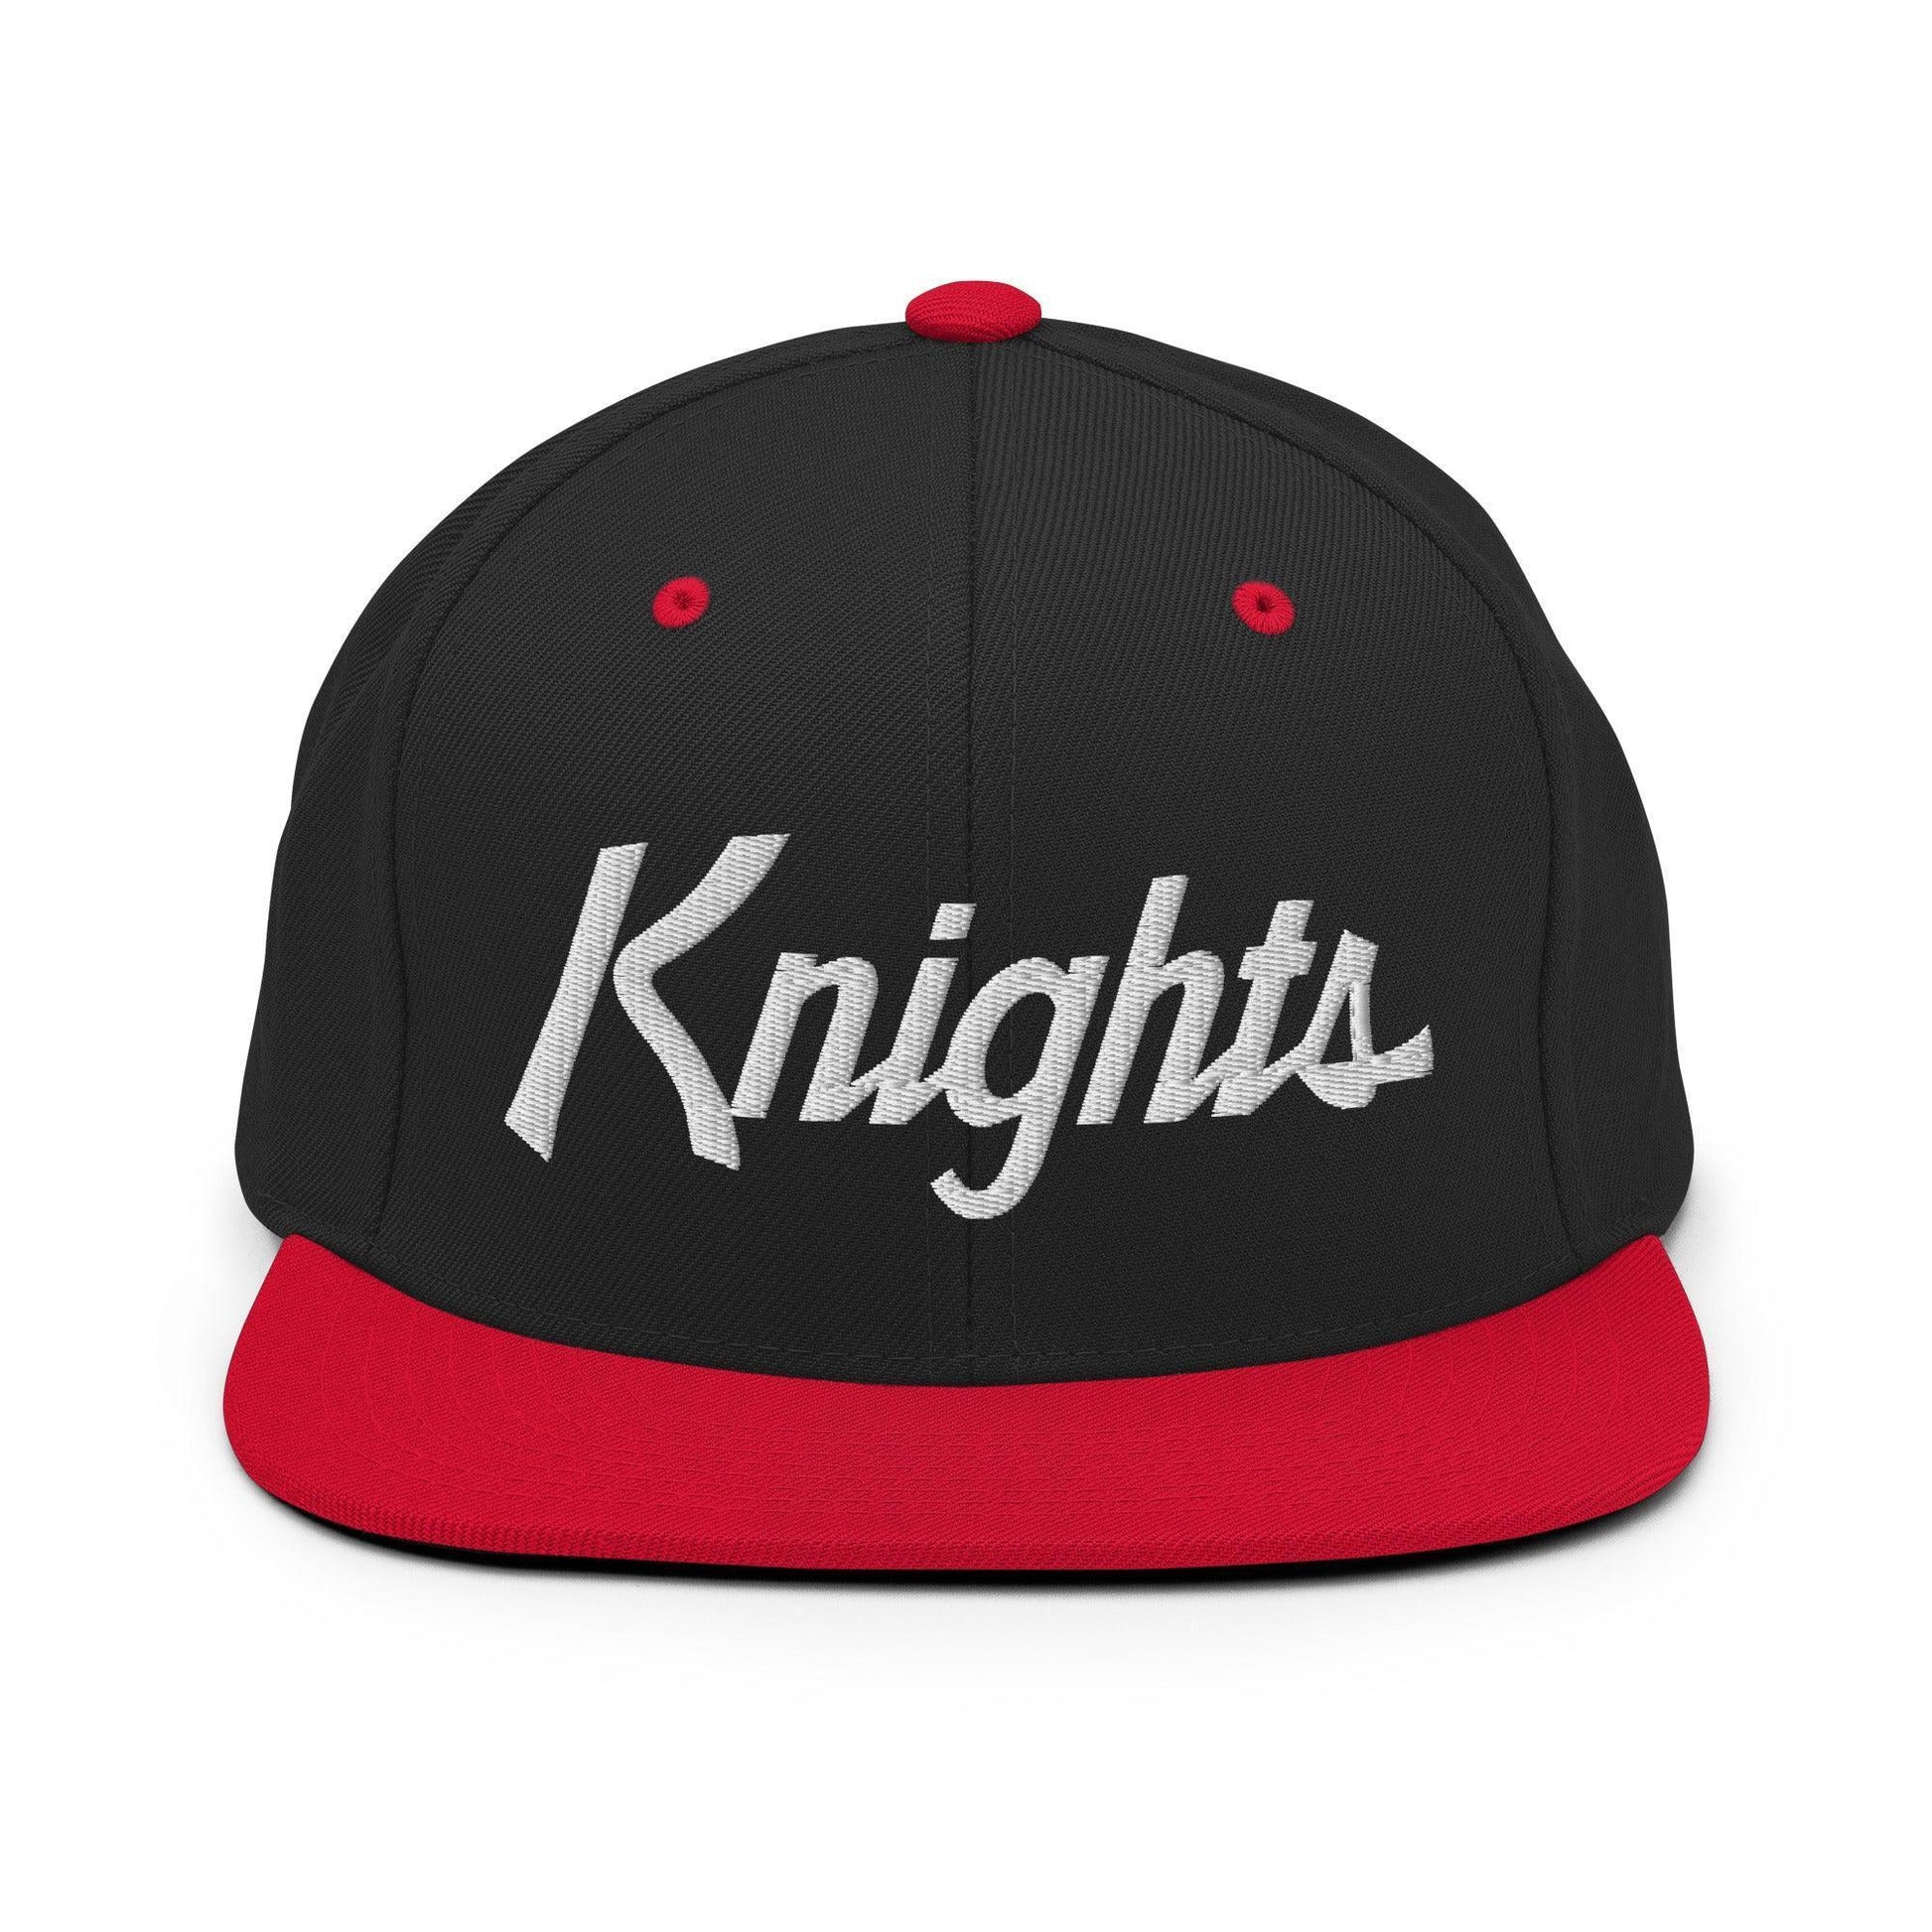 Knights School Mascot Script Snapback Hat Black Red